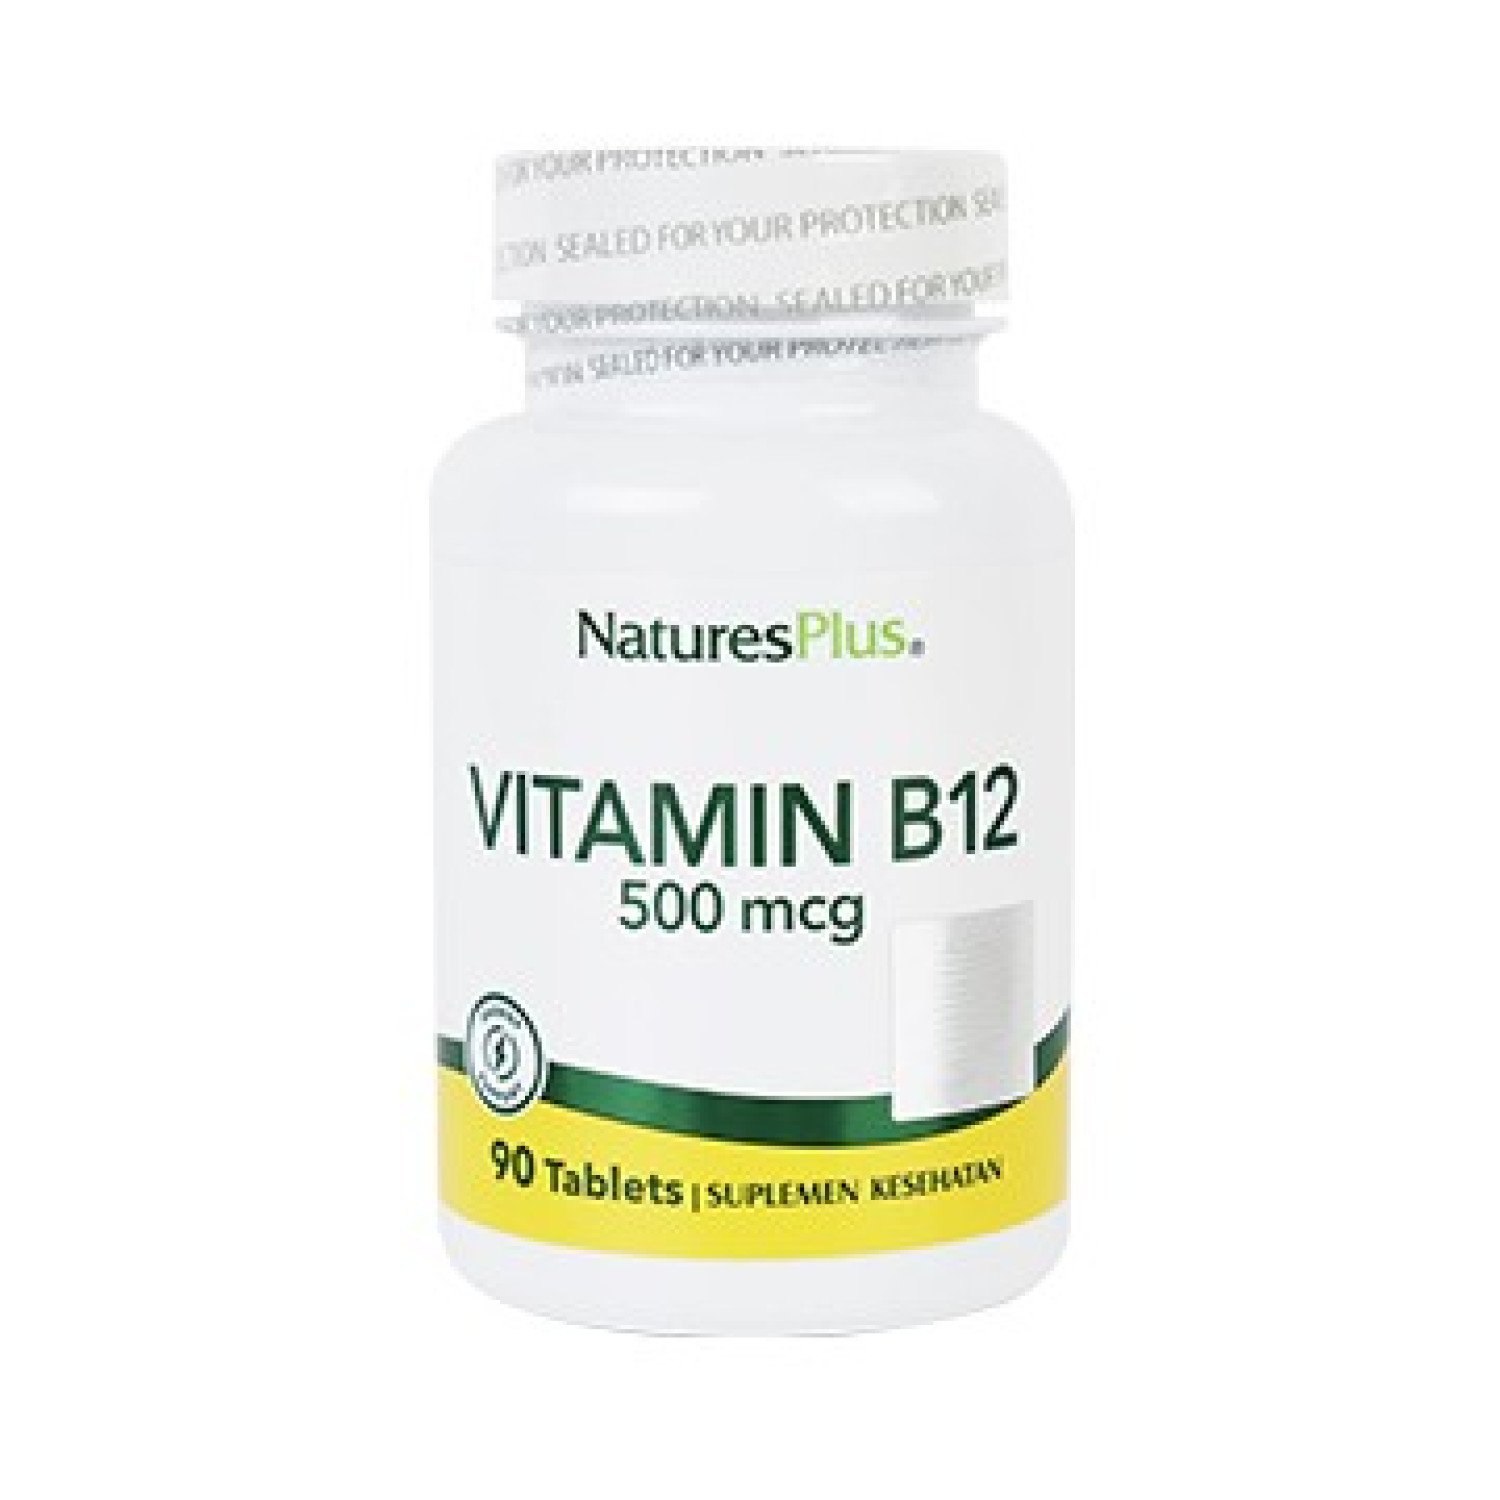 natures-plus-vitamin-b12-500mcg-90-tablet-6566b15096001.jpeg